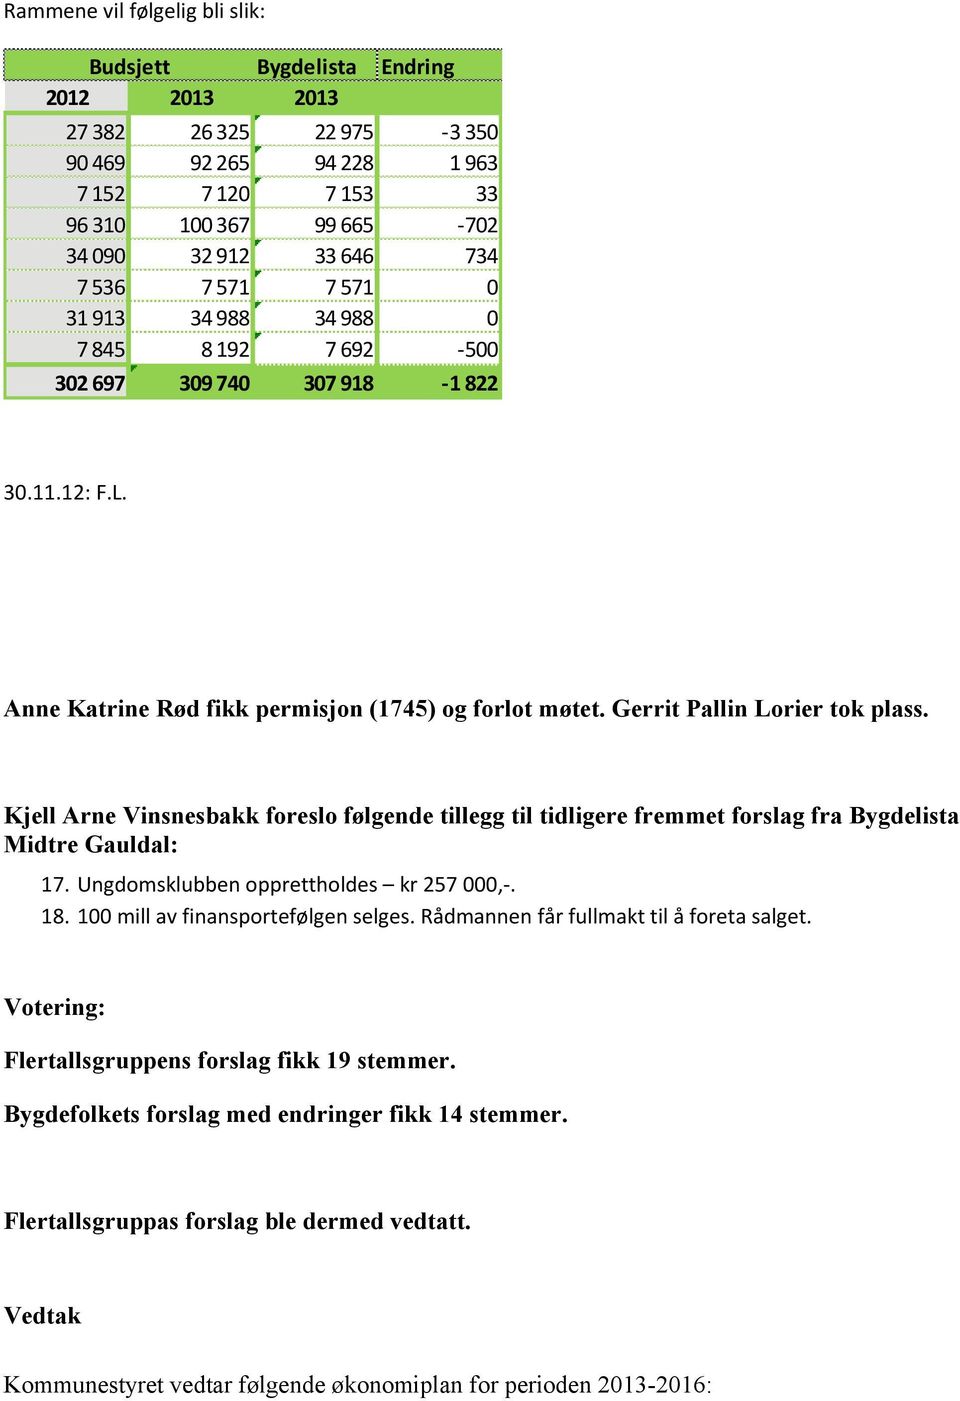 Kjell Arne Vinsnesbakk foreslo følgende tillegg til tidligere fremmet forslag fra Bygdelista Midtre Gauldal: 17. Ungdomsklubben opprettholdes kr 257,-. 18. 1 mill av finansportefølgen selges.